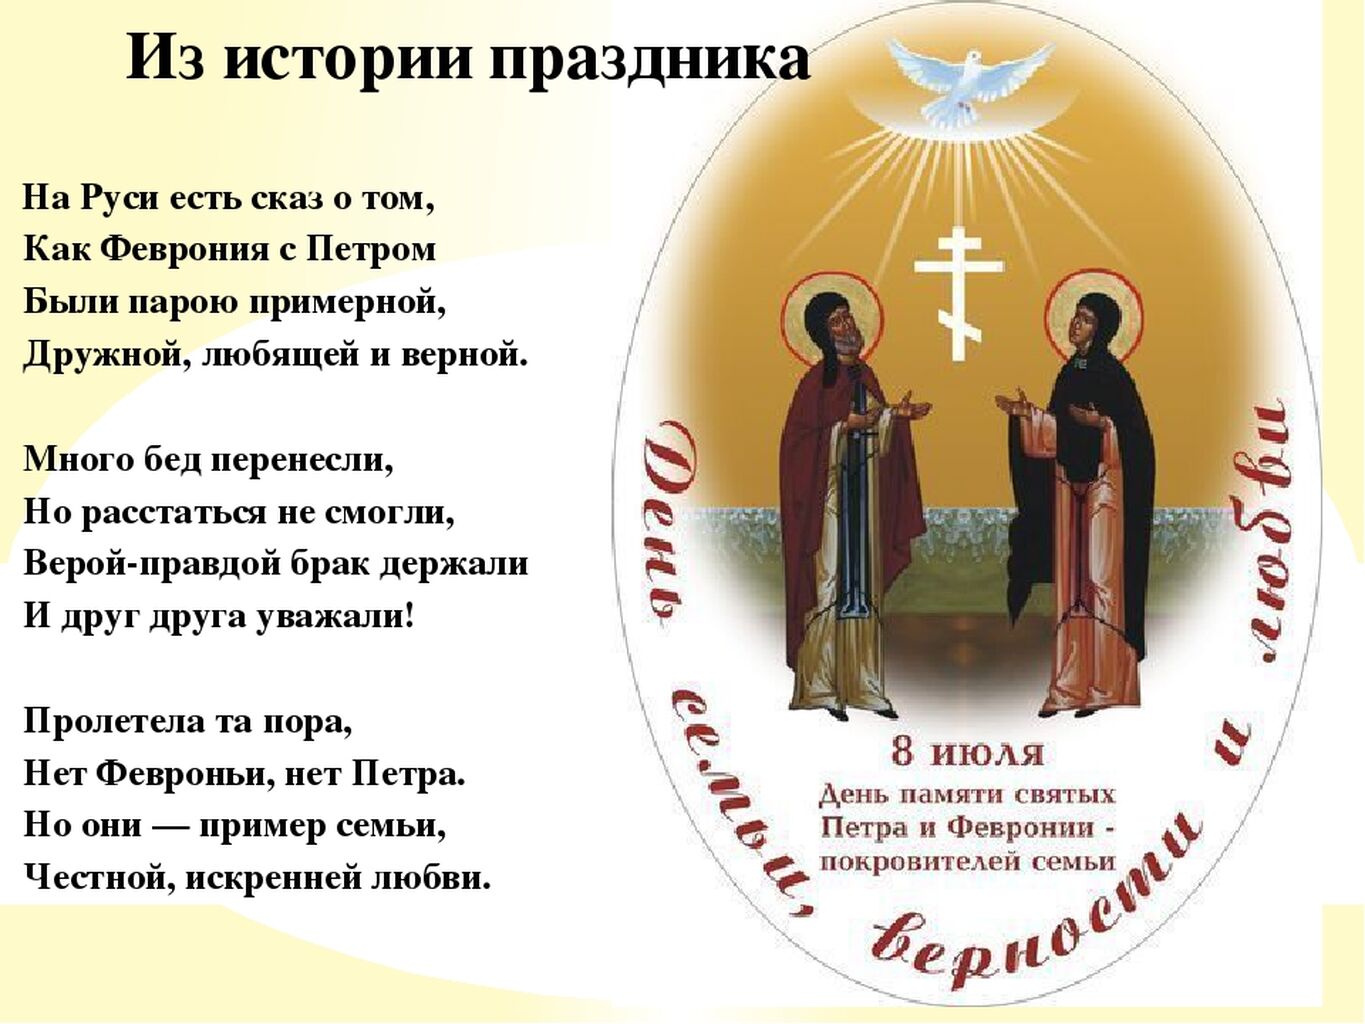 8 Июля день памяти святых Петра и Февронии